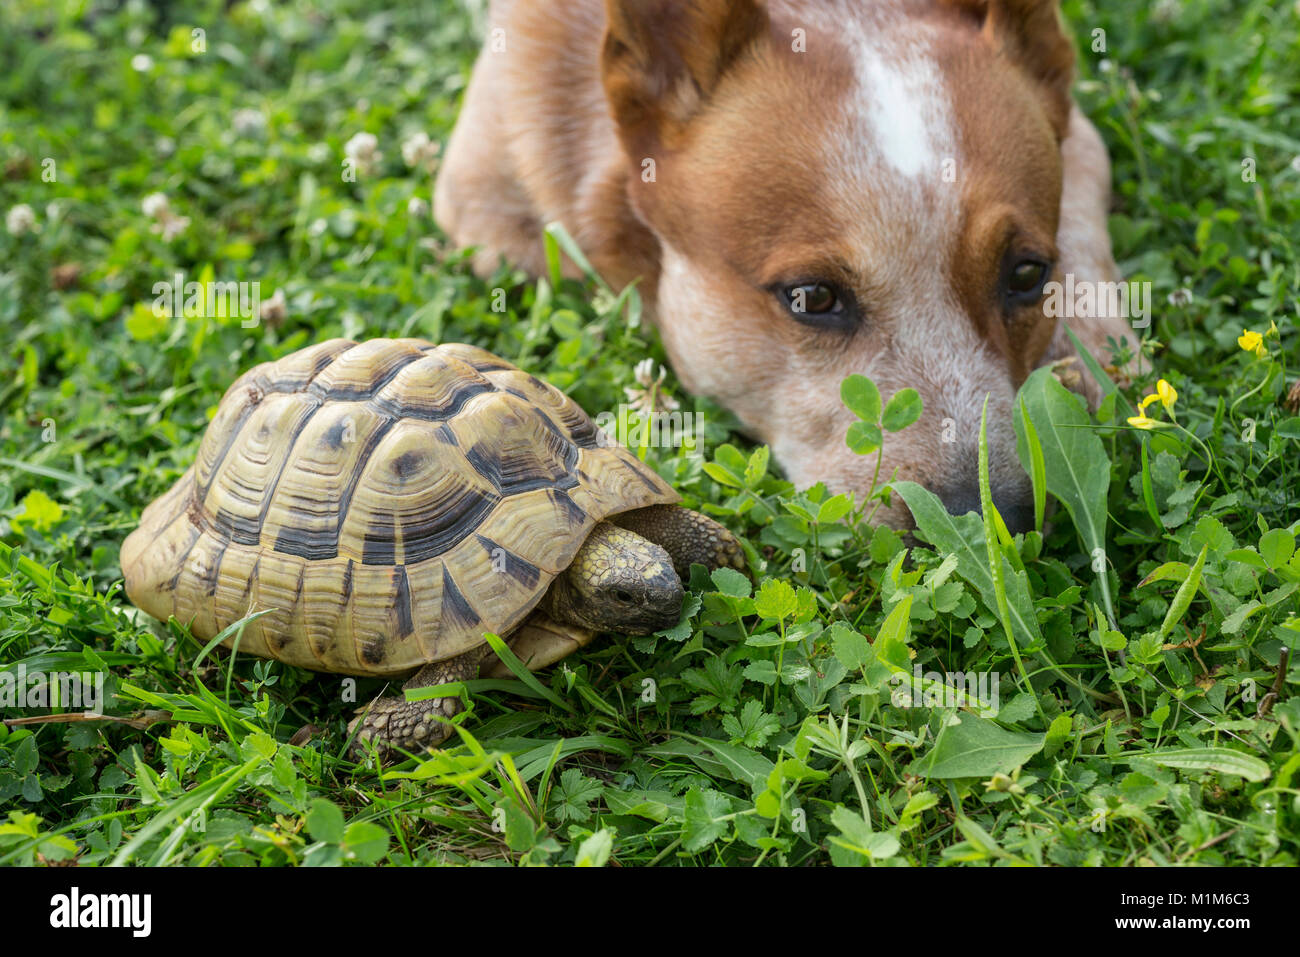 Amistad Animal: perro de ganado australiano tumbado junto a la Tortuga Hermanns (Testudo hermanni) en la hierba. Alemania Foto de stock